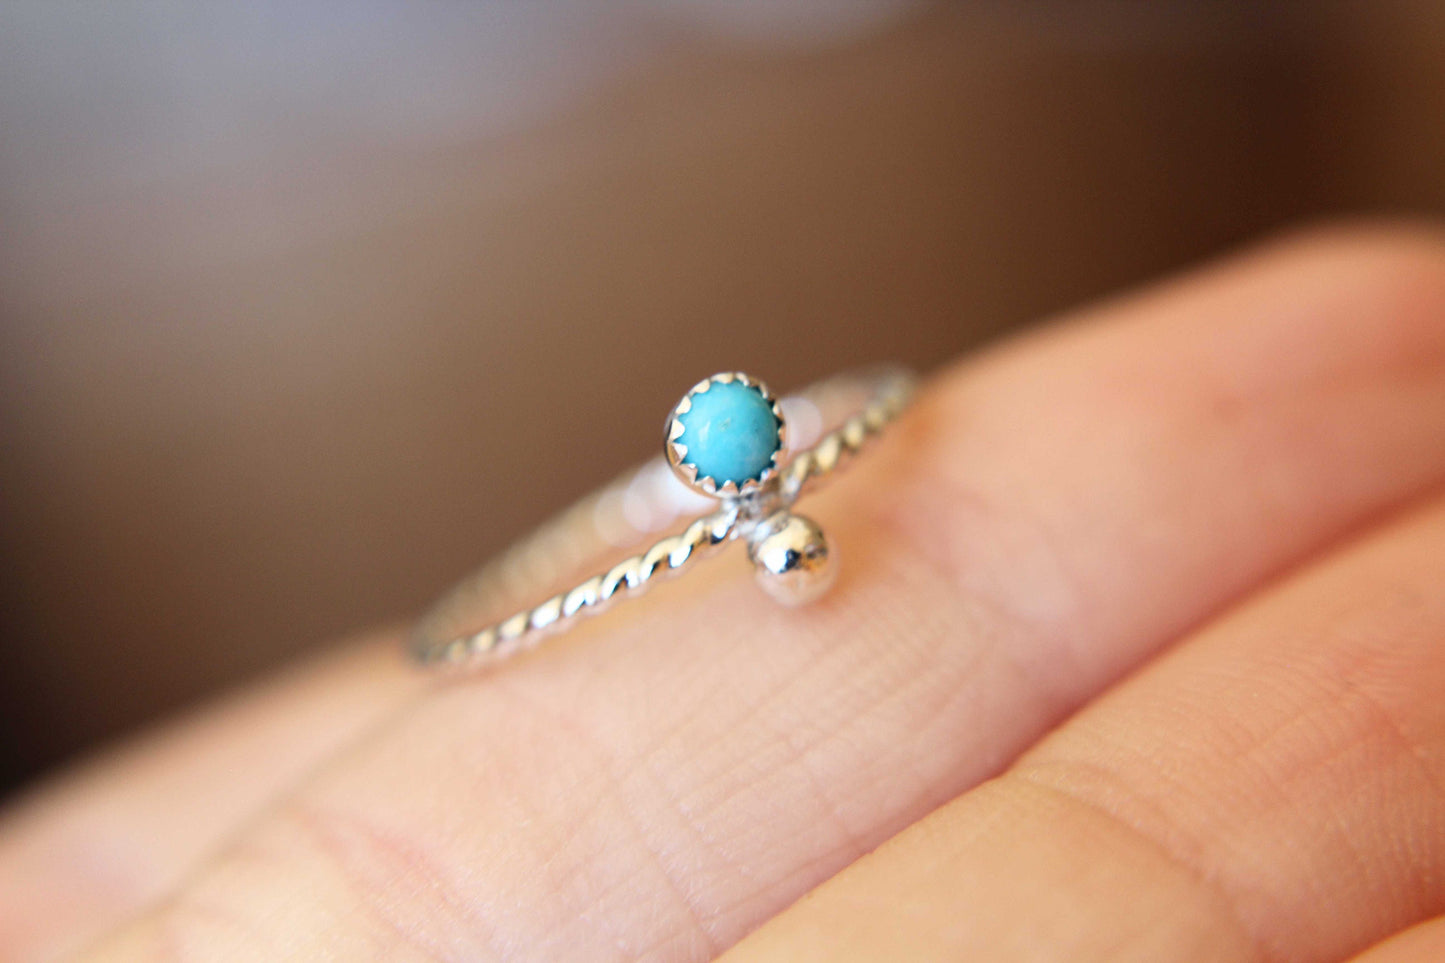 Turquoise Ring, Boho Turquoise Ring, Simple Boho Turquoise Ring, Simple Boho Ring, Boho Jewelry, Simple Stacking Ring, Turquoise Jewelry